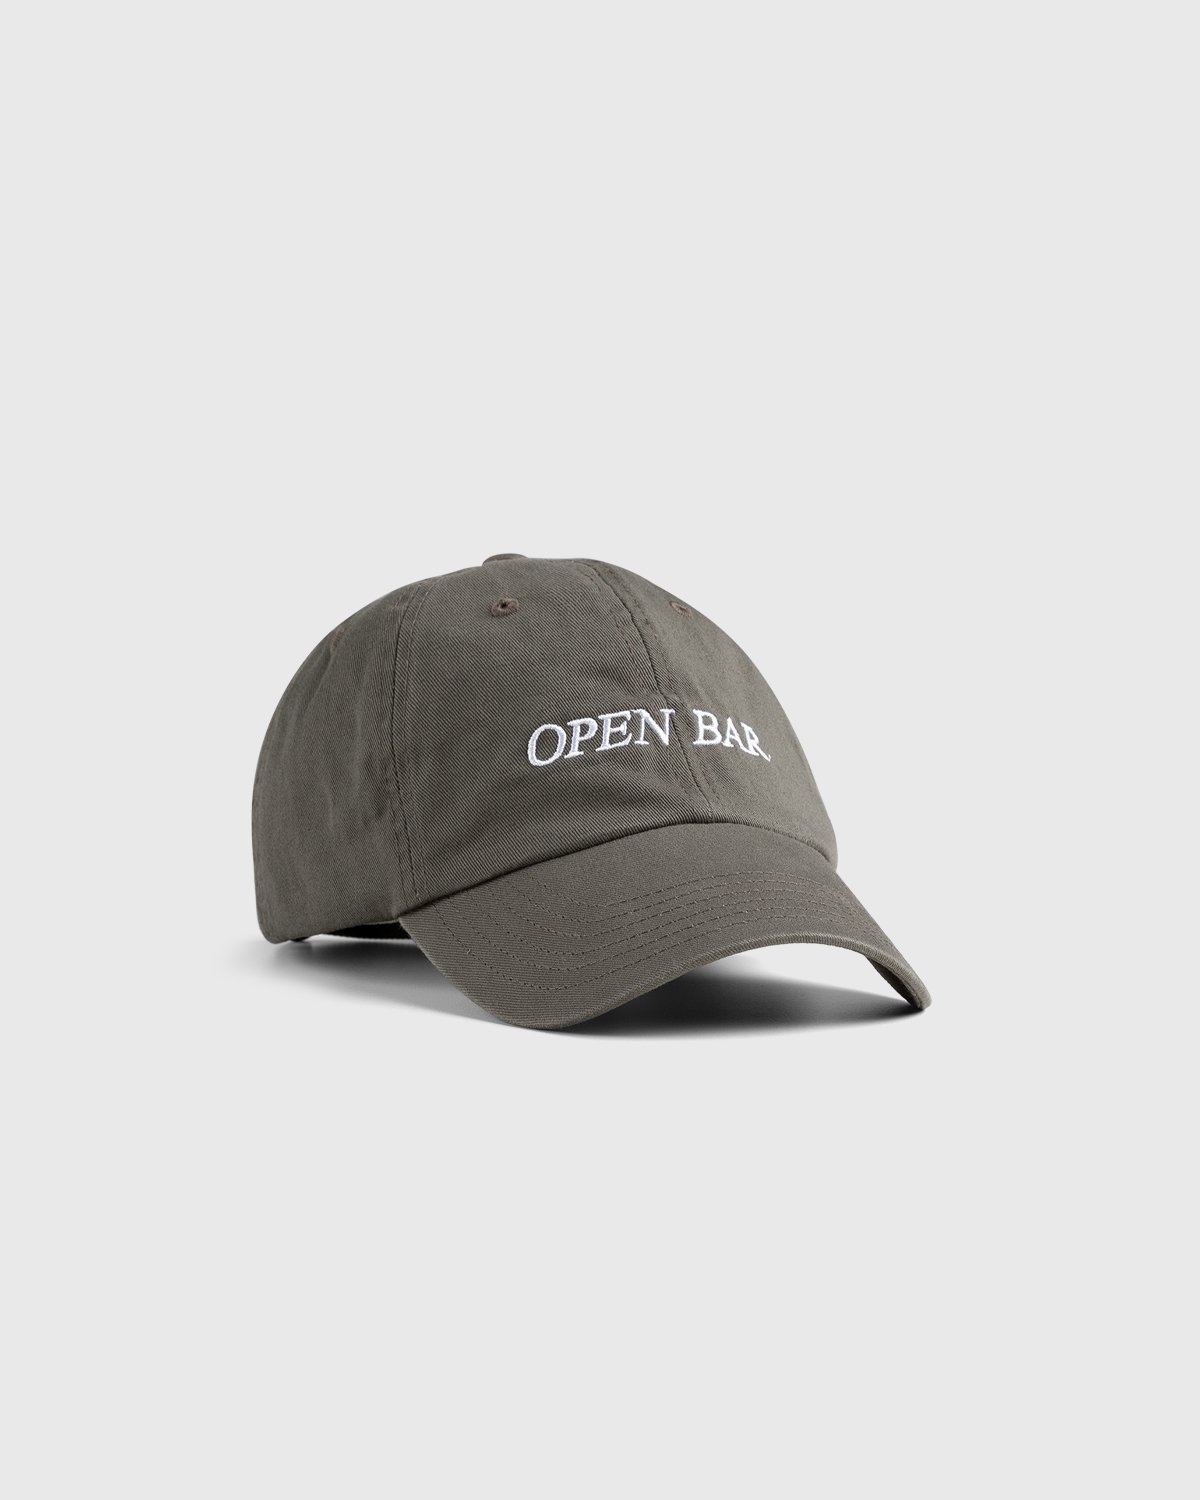 HO HO COCO – Open Bar Cap Grey  - Caps - Grey - Image 1